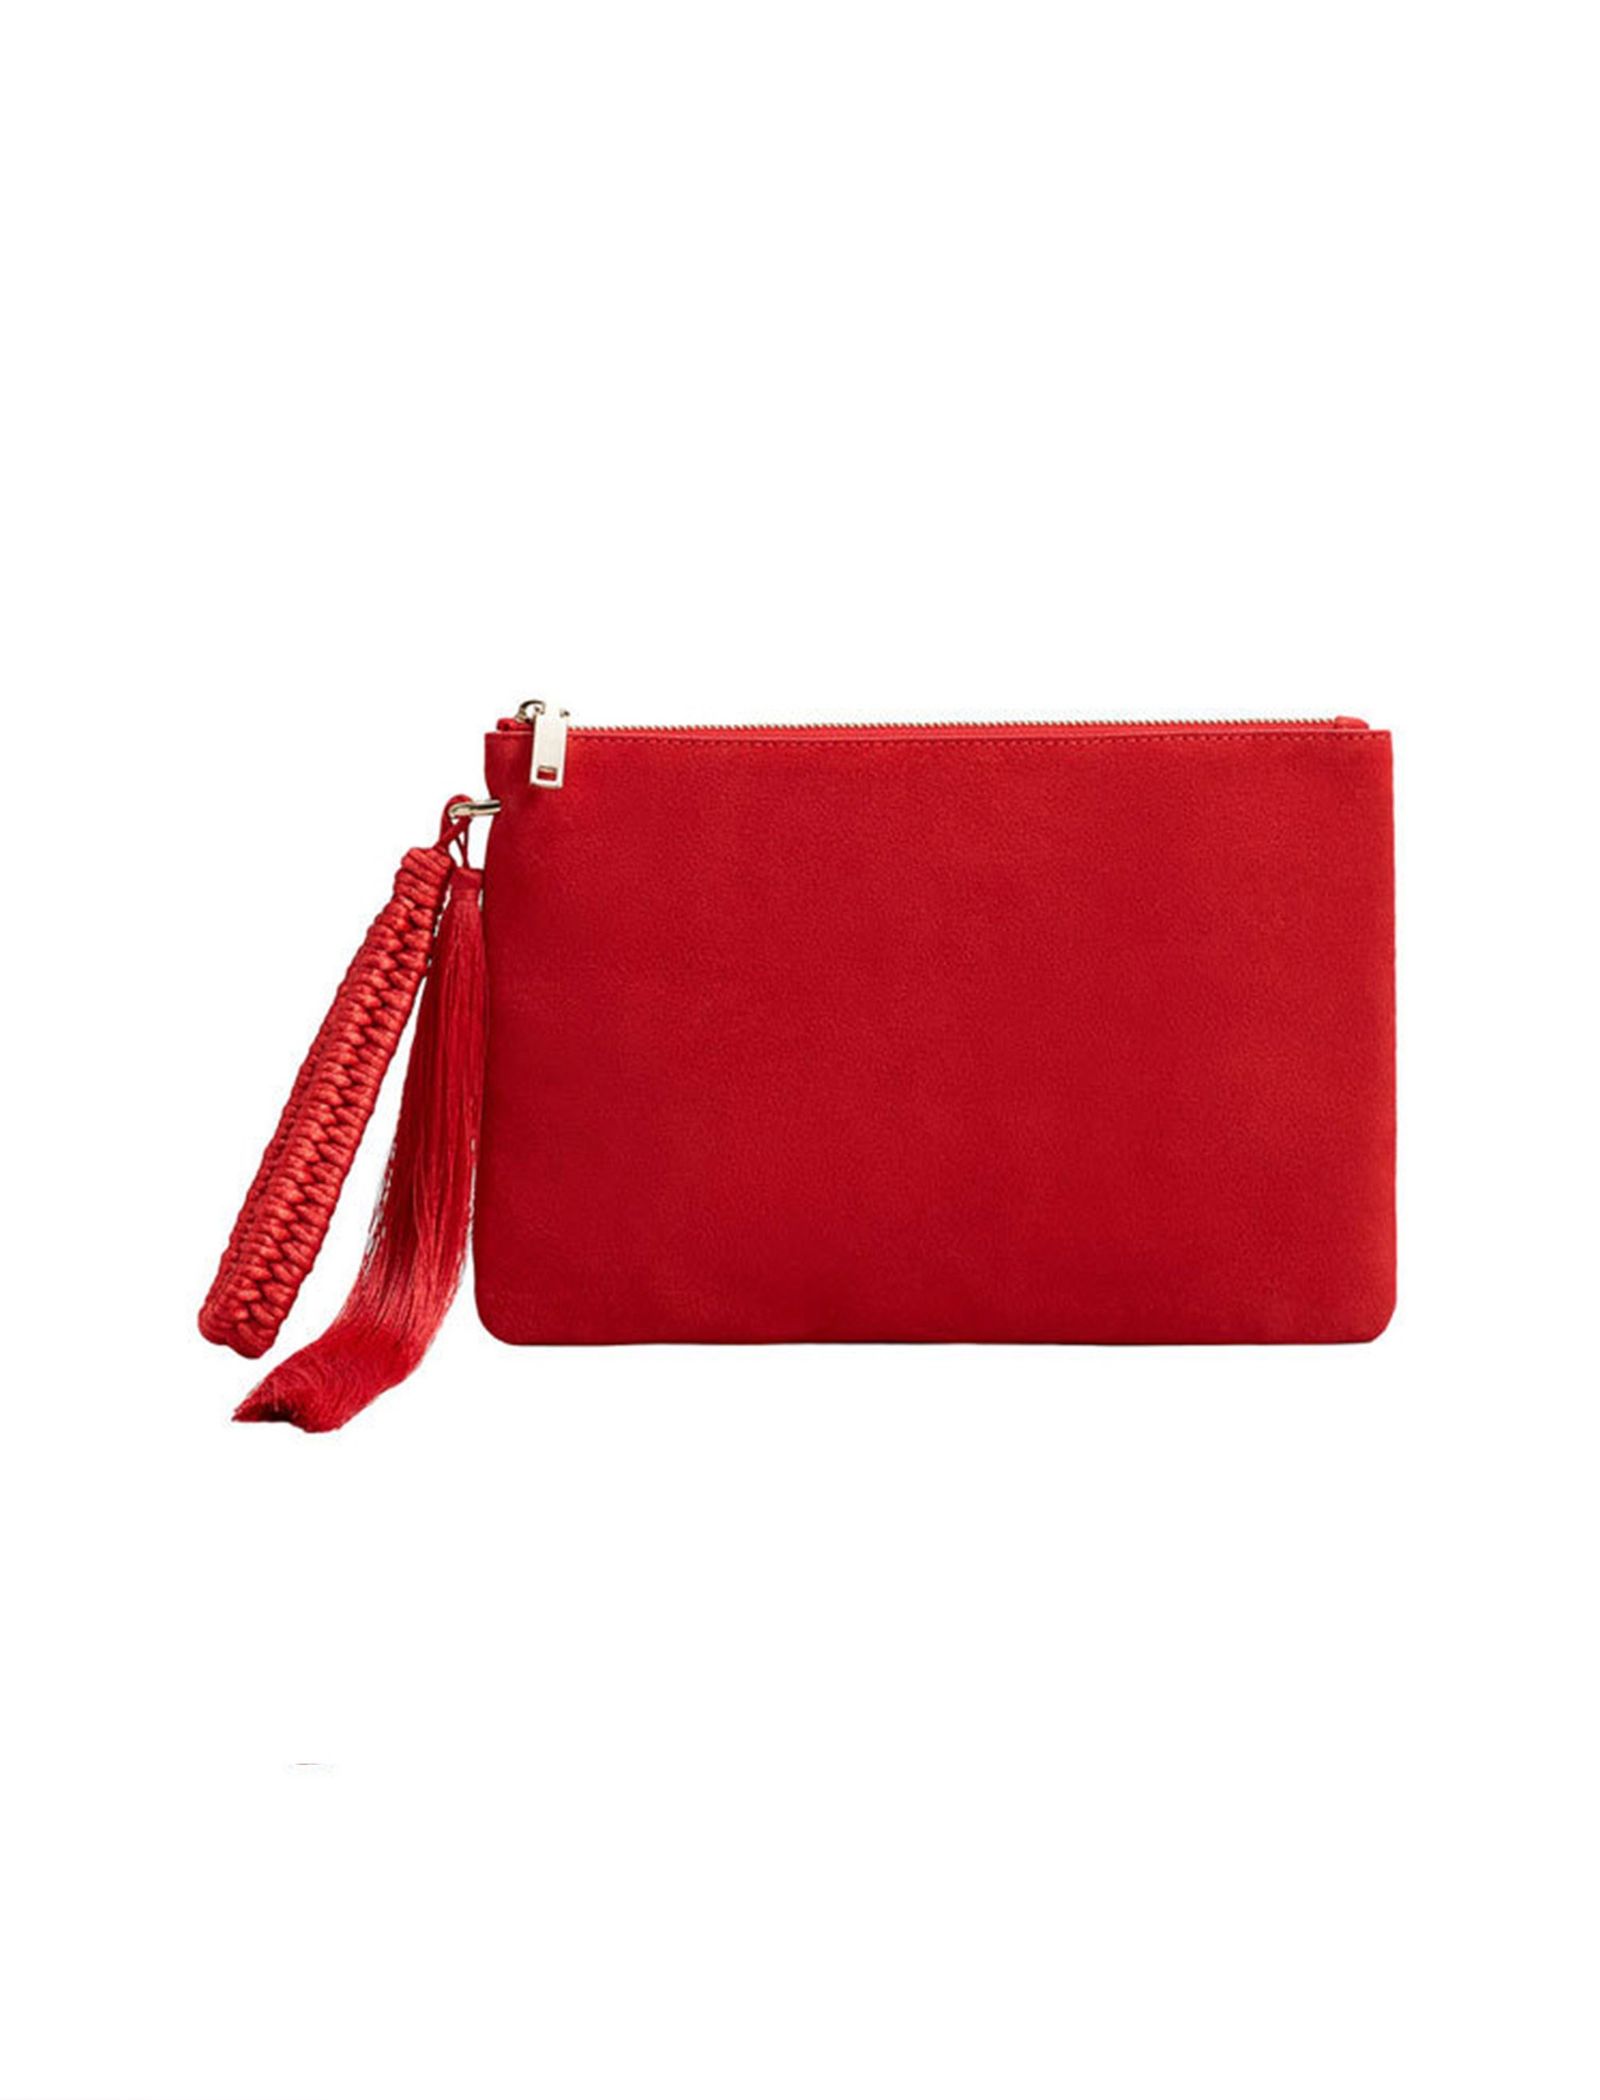 کیف دستی روزمره زنانه - مانگو - قرمز - 1